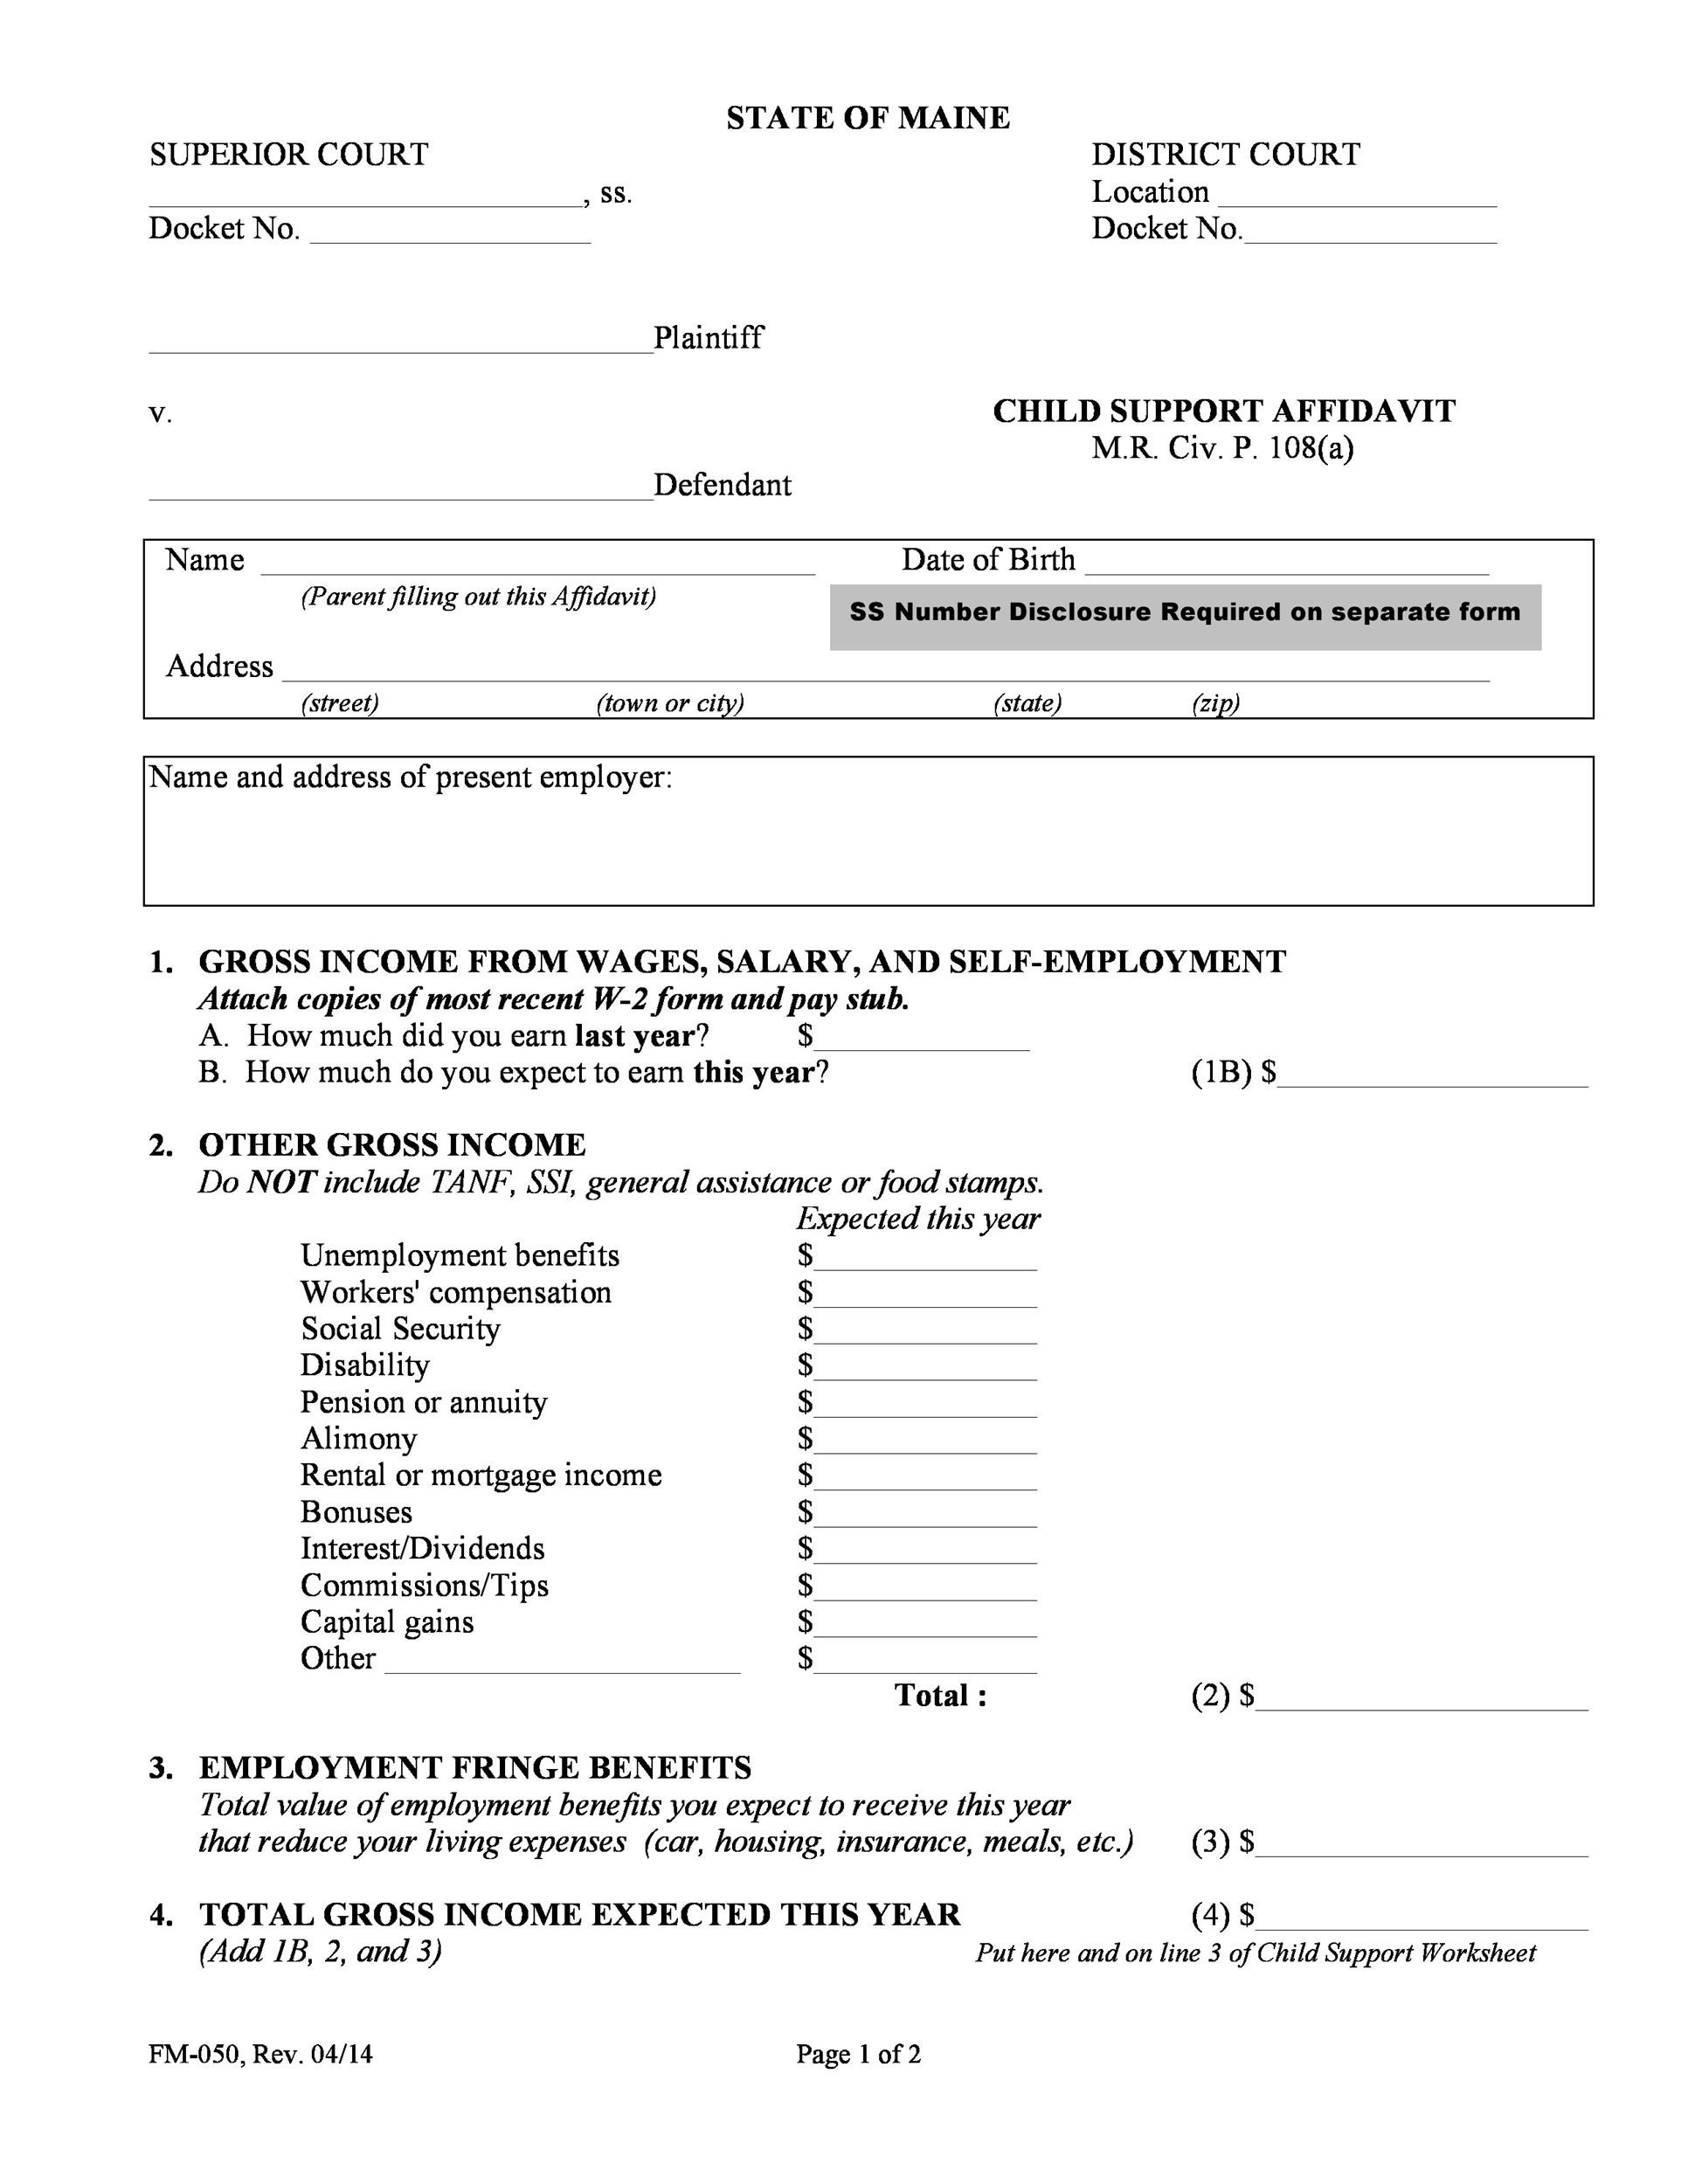 affidavit-form-example-filled-fasrbj